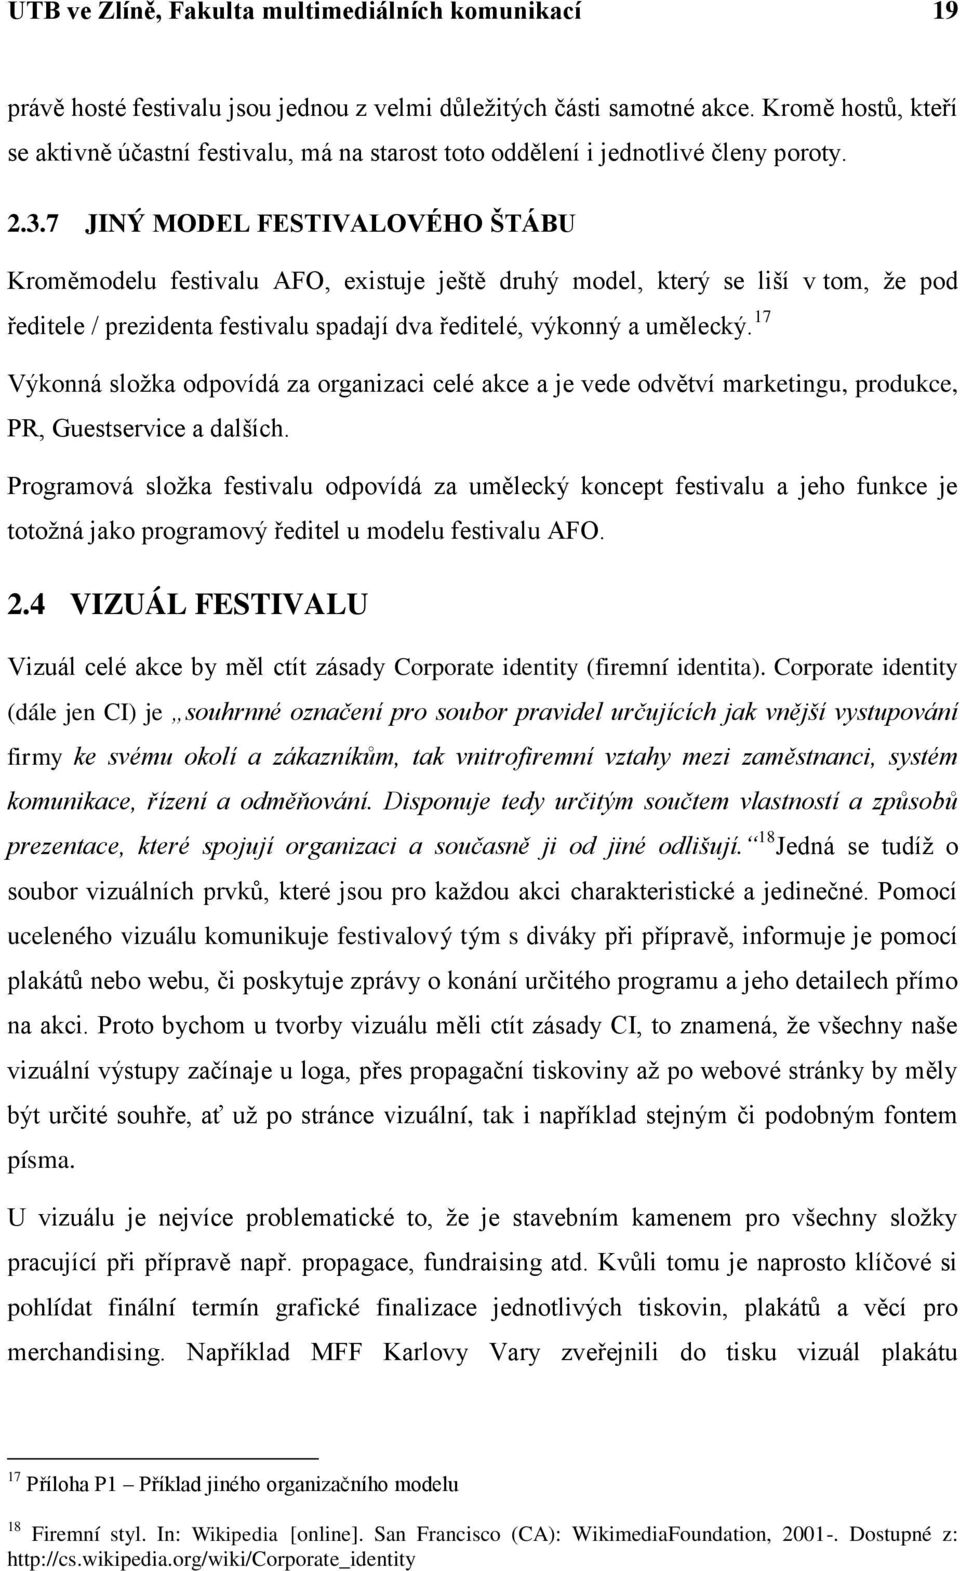 7 JINÝ MODEL FESTIVALOVÉHO ŠTÁBU Kroměmodelu festivalu AFO, existuje ještě druhý model, který se liší v tom, že pod ředitele / prezidenta festivalu spadají dva ředitelé, výkonný a umělecký.